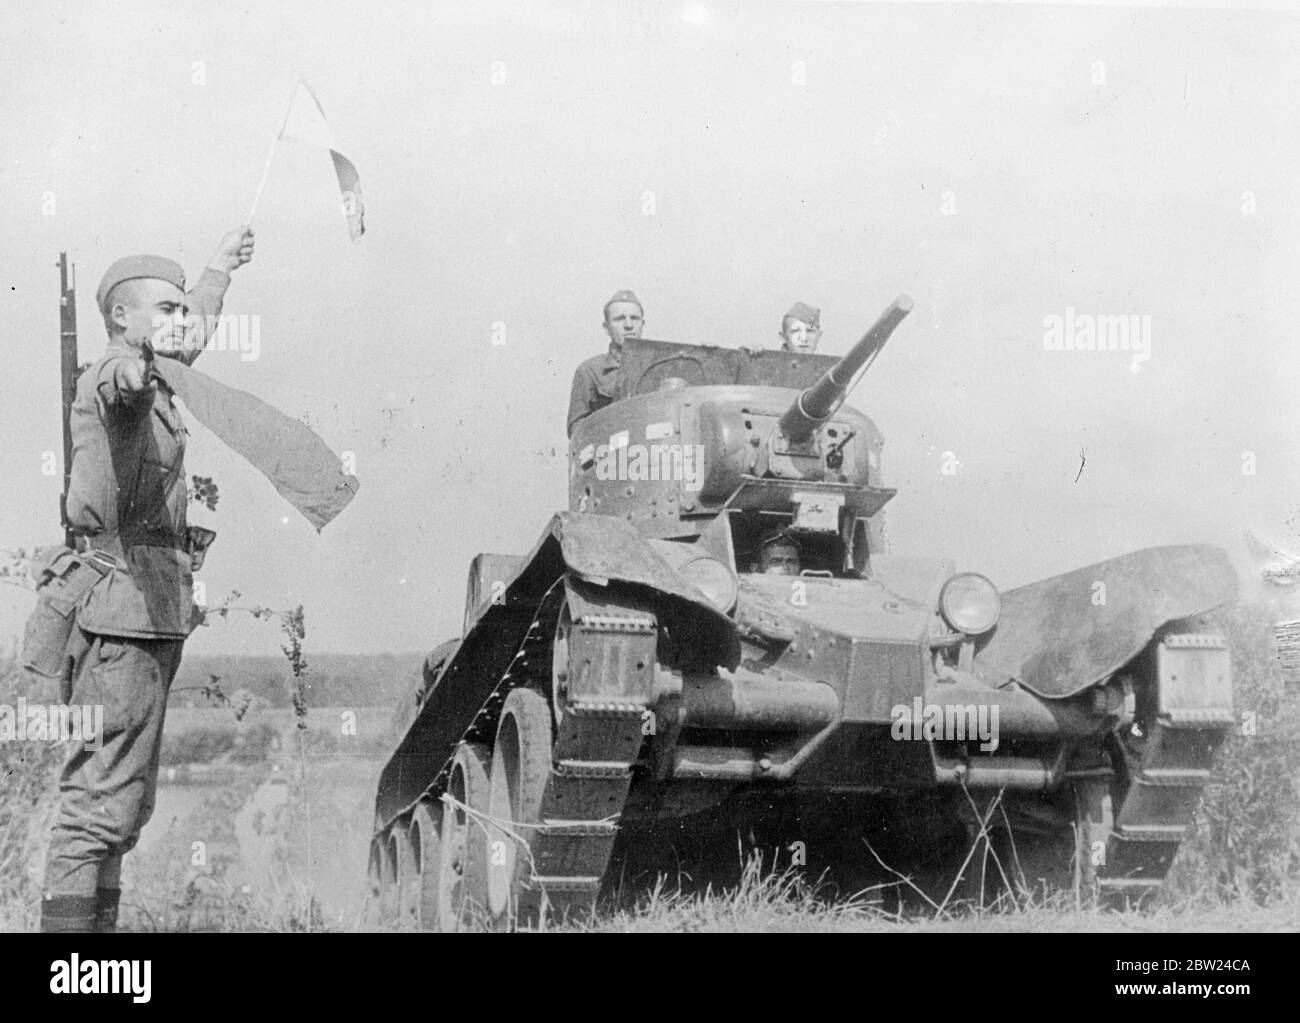 Erstes Bild der russischen militärischen Vorbereitung. Wie andere europäische Länder, die Sowjetunion, ist die Montage und Vorbereitung ihrer Kräfte für jede Notlage, die aus der Tschechoslowakischen Krise entstehen kann. Diese exklusiven Bilder von der ersten sowjetischen militärischen Vorbereitungen. Foto zeigt, ein sowjetischer Panzer auf dem Weg zu einer Position. 25. September 1938 Stockfoto